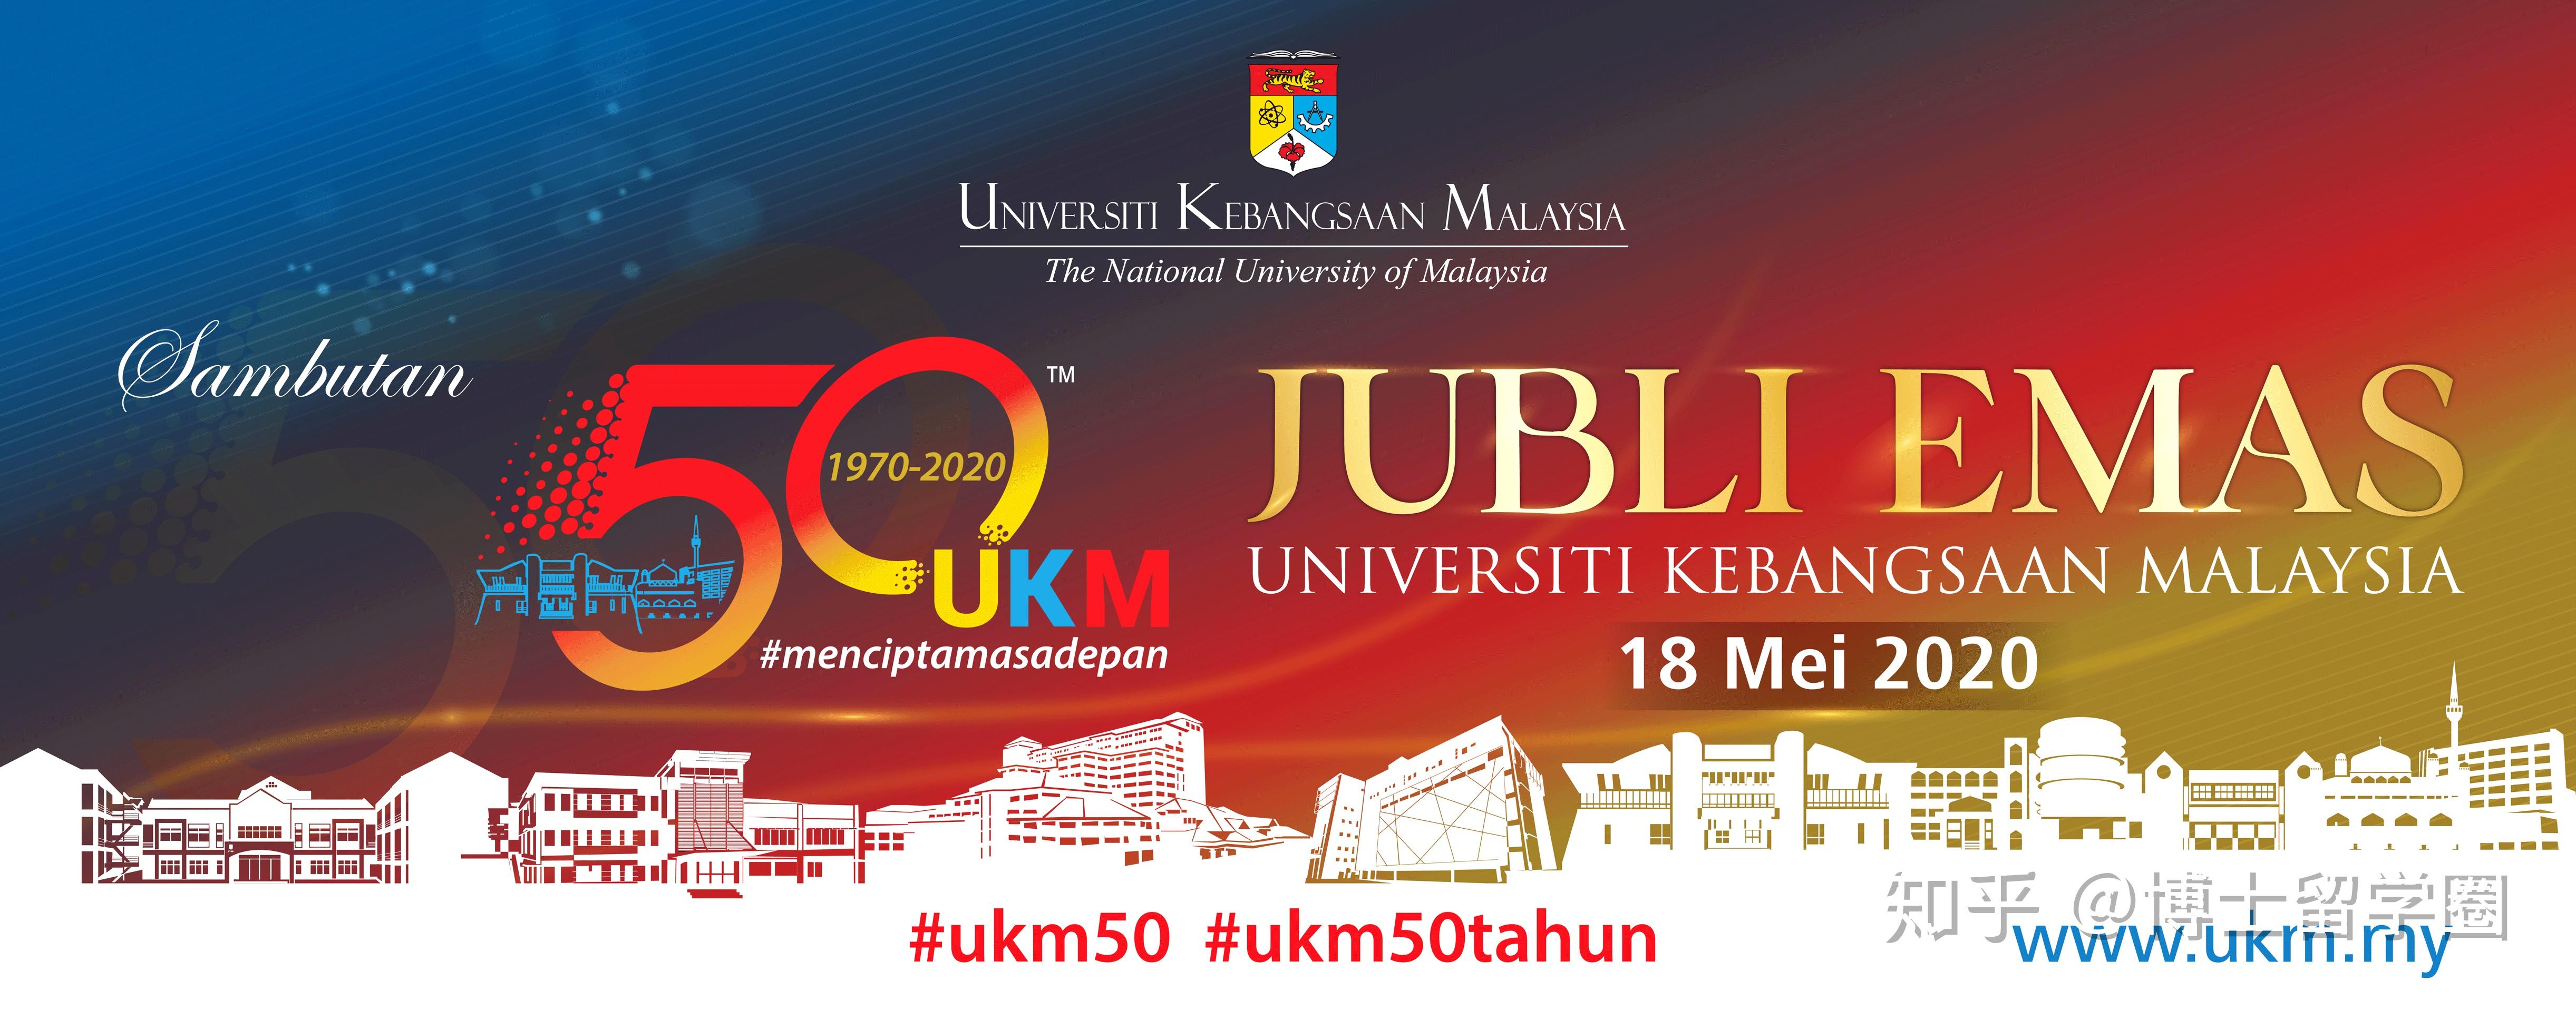 马来西亚国立大学(前称:马来西亚国民大学)是马来西亚五所研究性大学